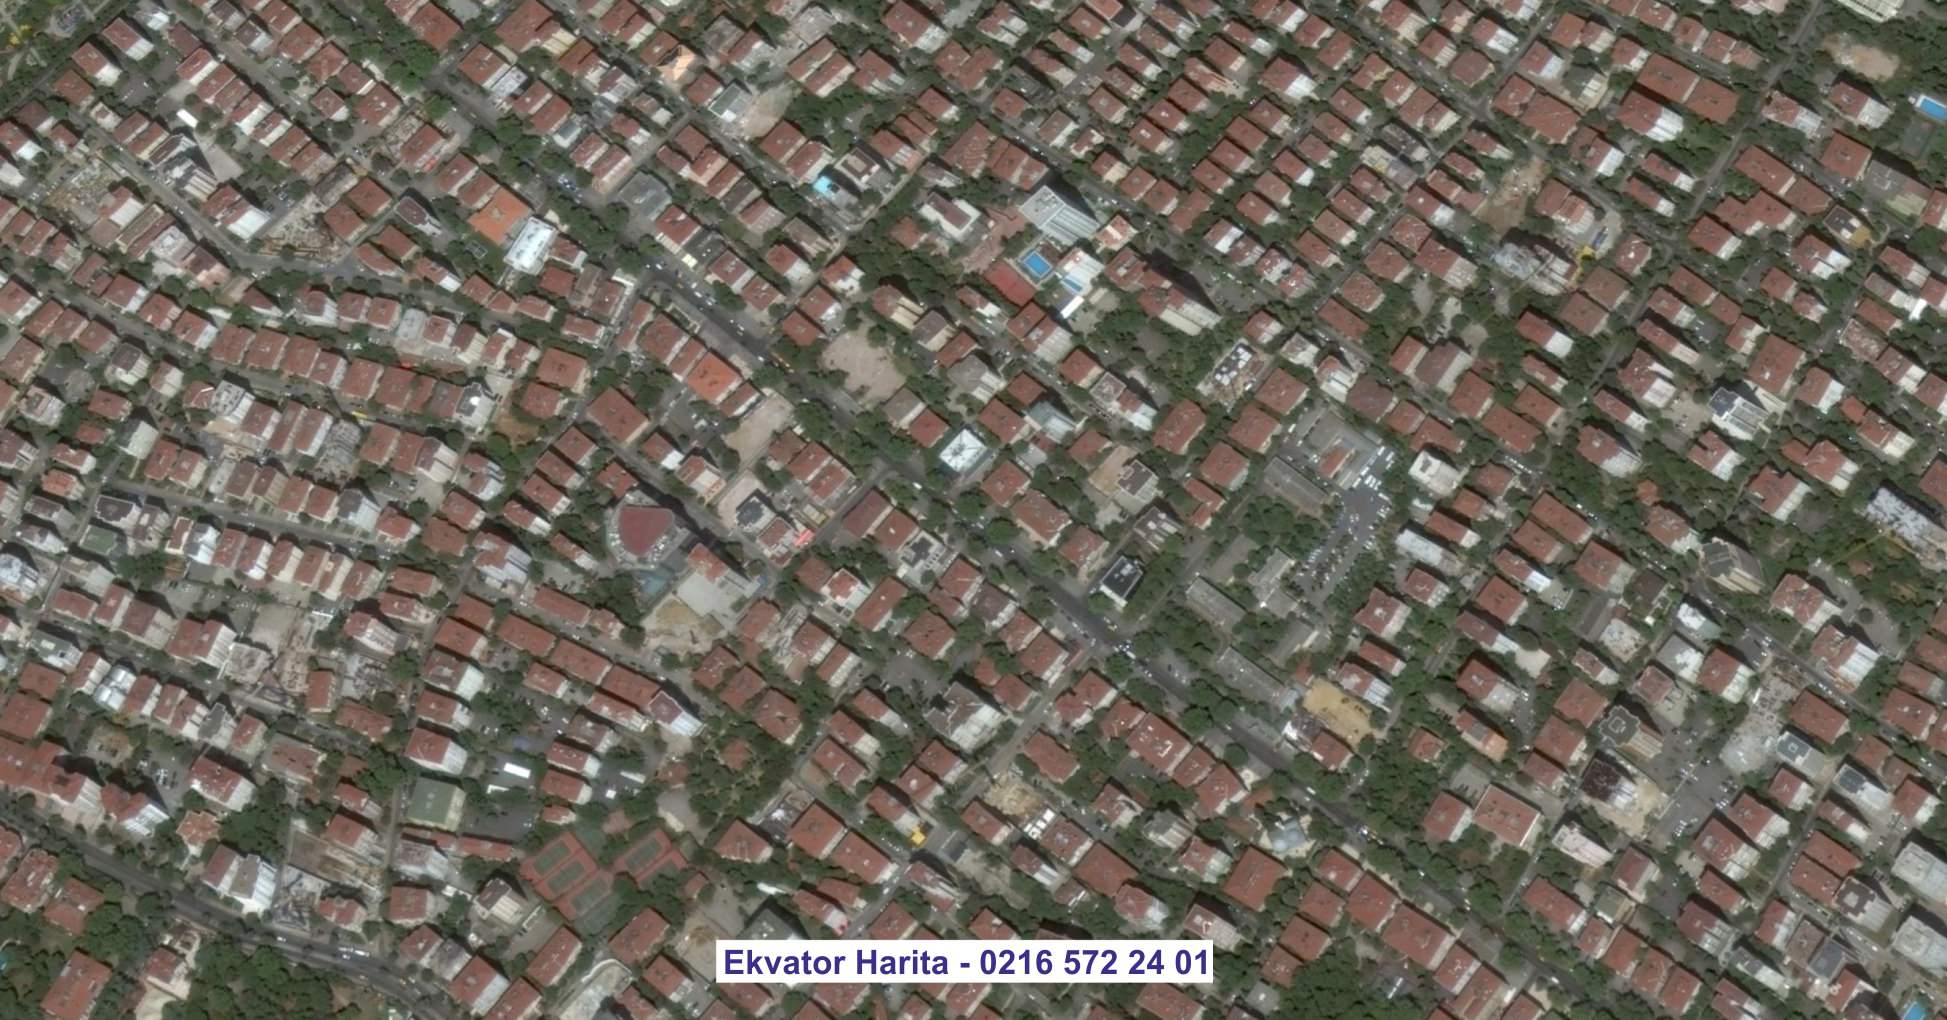 Suleymaniye Uydu Görüntüsü Örnek Fotoğrafı